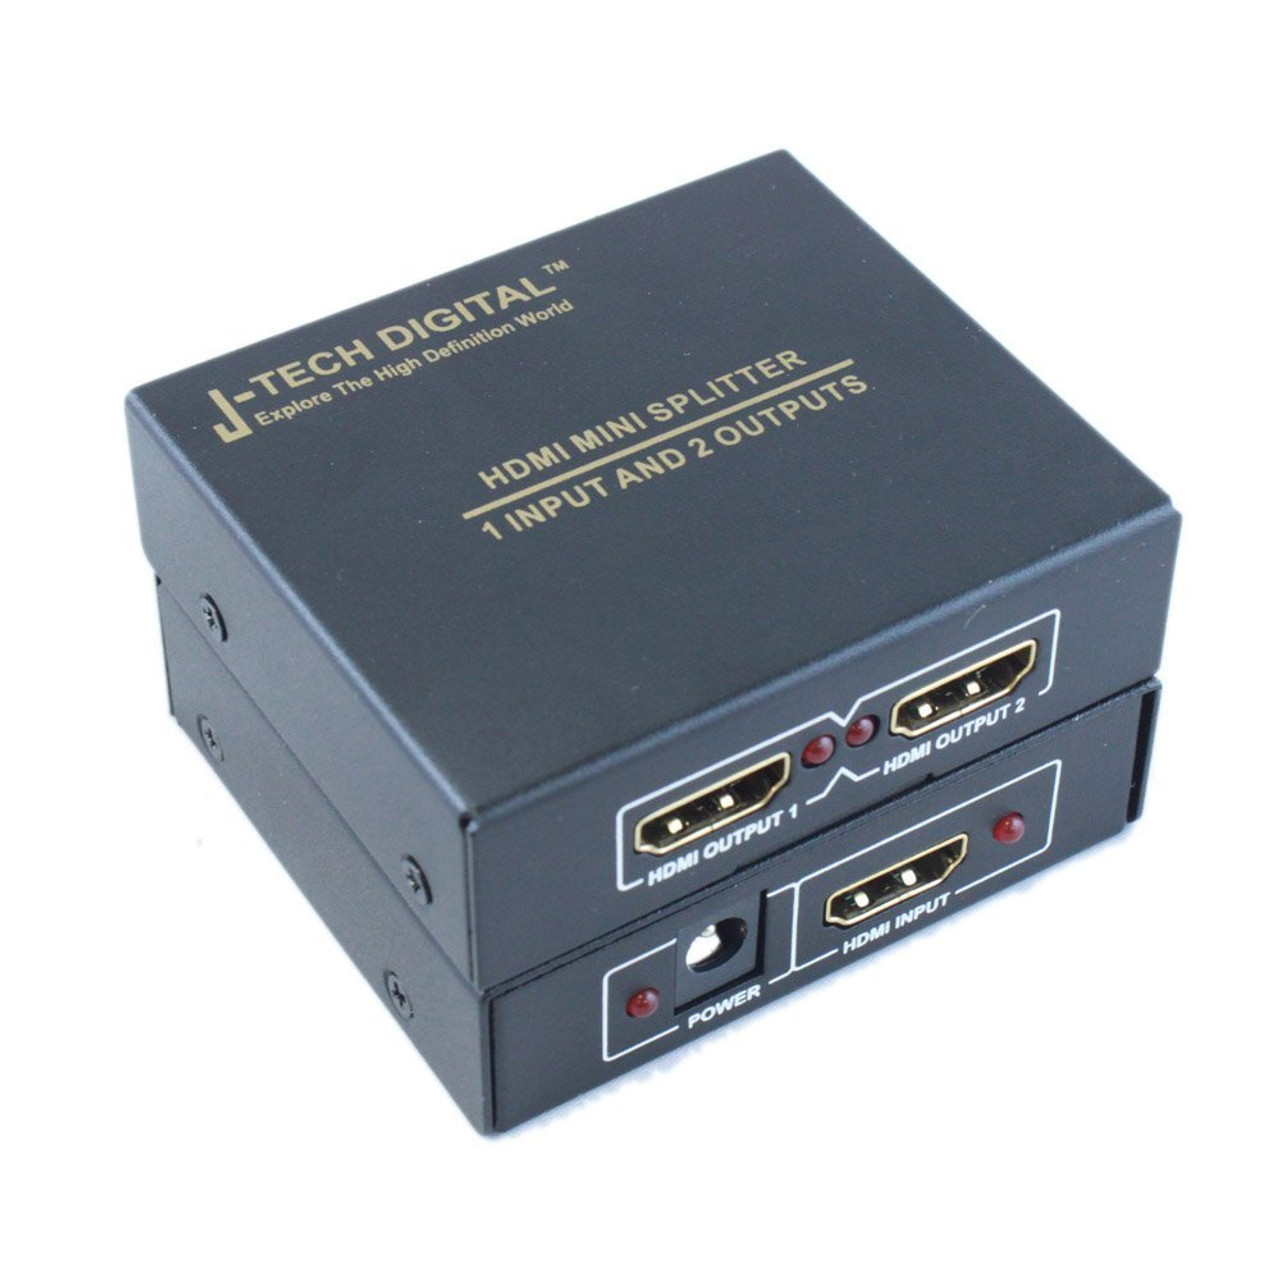 Digital JTD-MINI-1x2SP 2 Port 1X2 Powered Hdmi Super Mini Splitter for Full Hd 1080P with 3D Capability